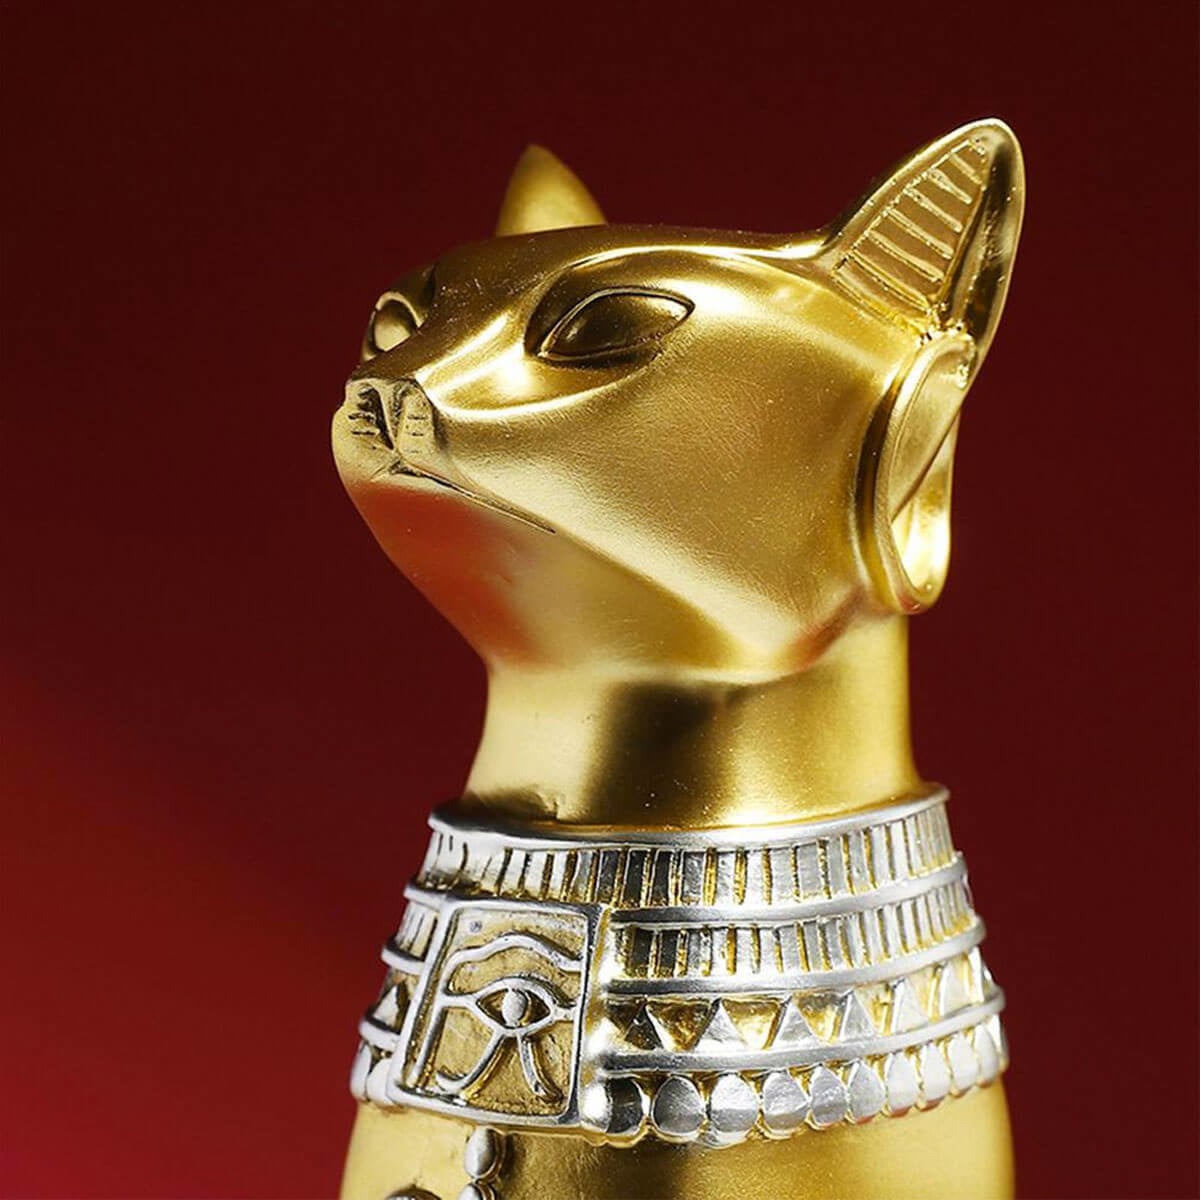 Egyptian God Figurine Cat Metal Statue Sculpture